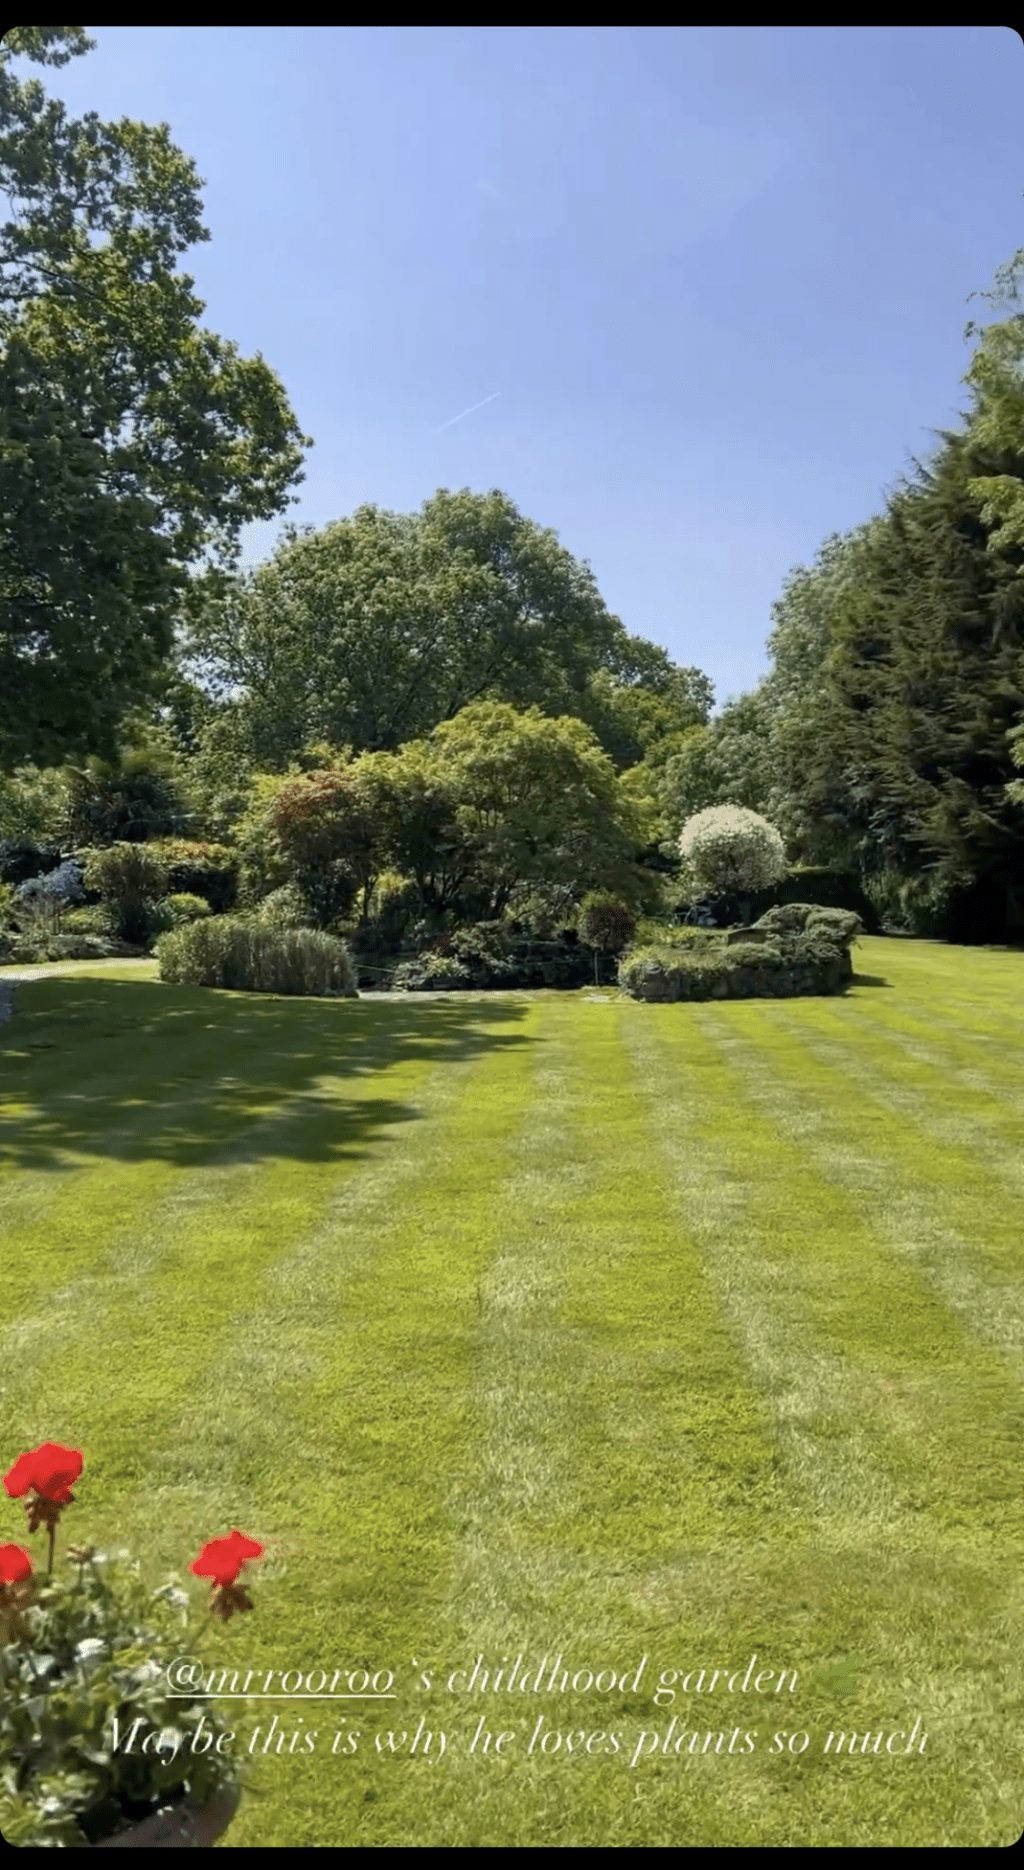 原來環境幽美的大花園是老公Andrew成長的地方。